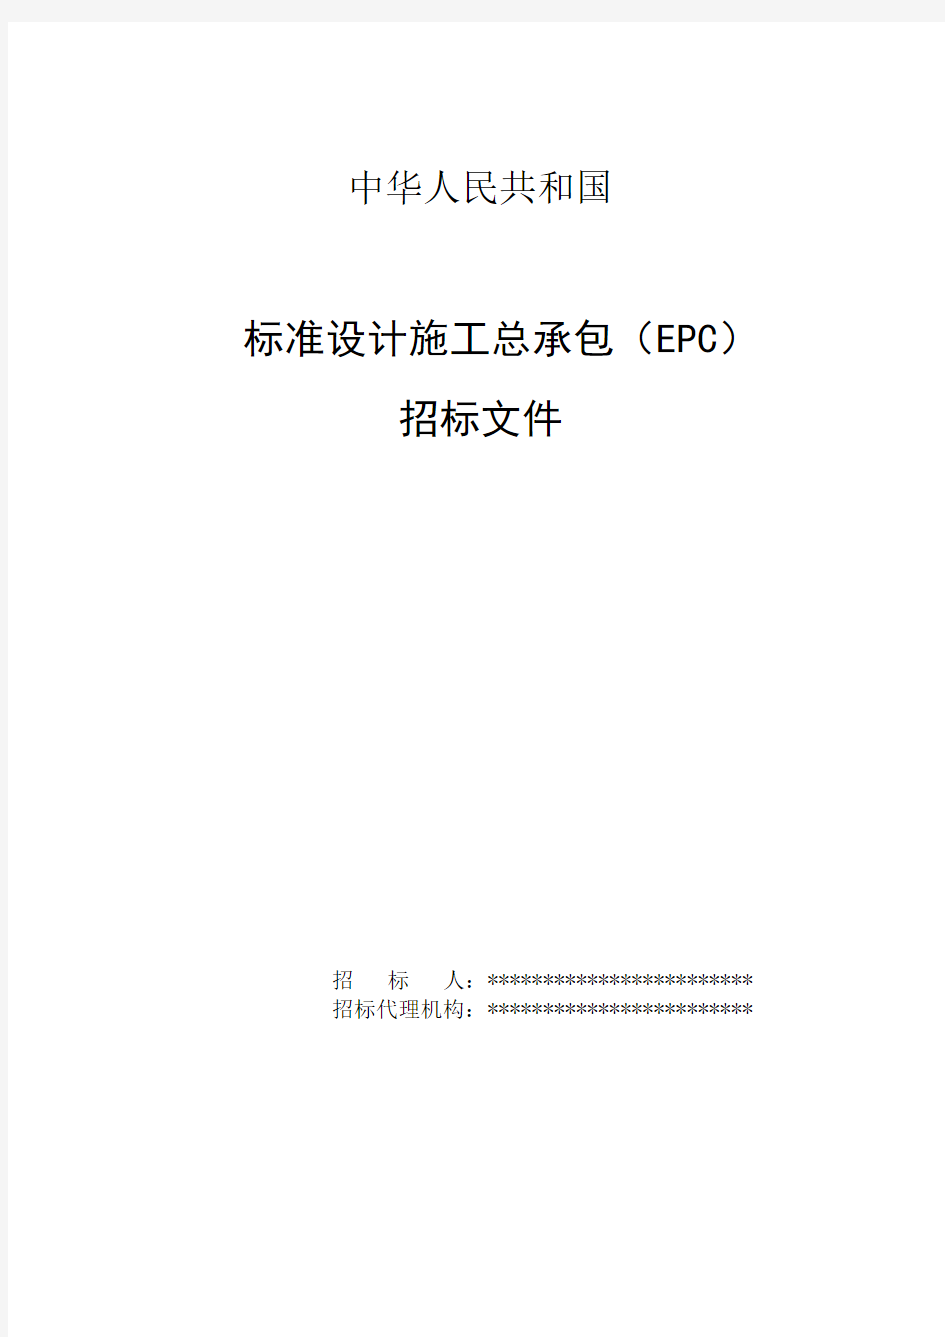 中华人民共和国标准设计施工总承包(EPC)招标文件